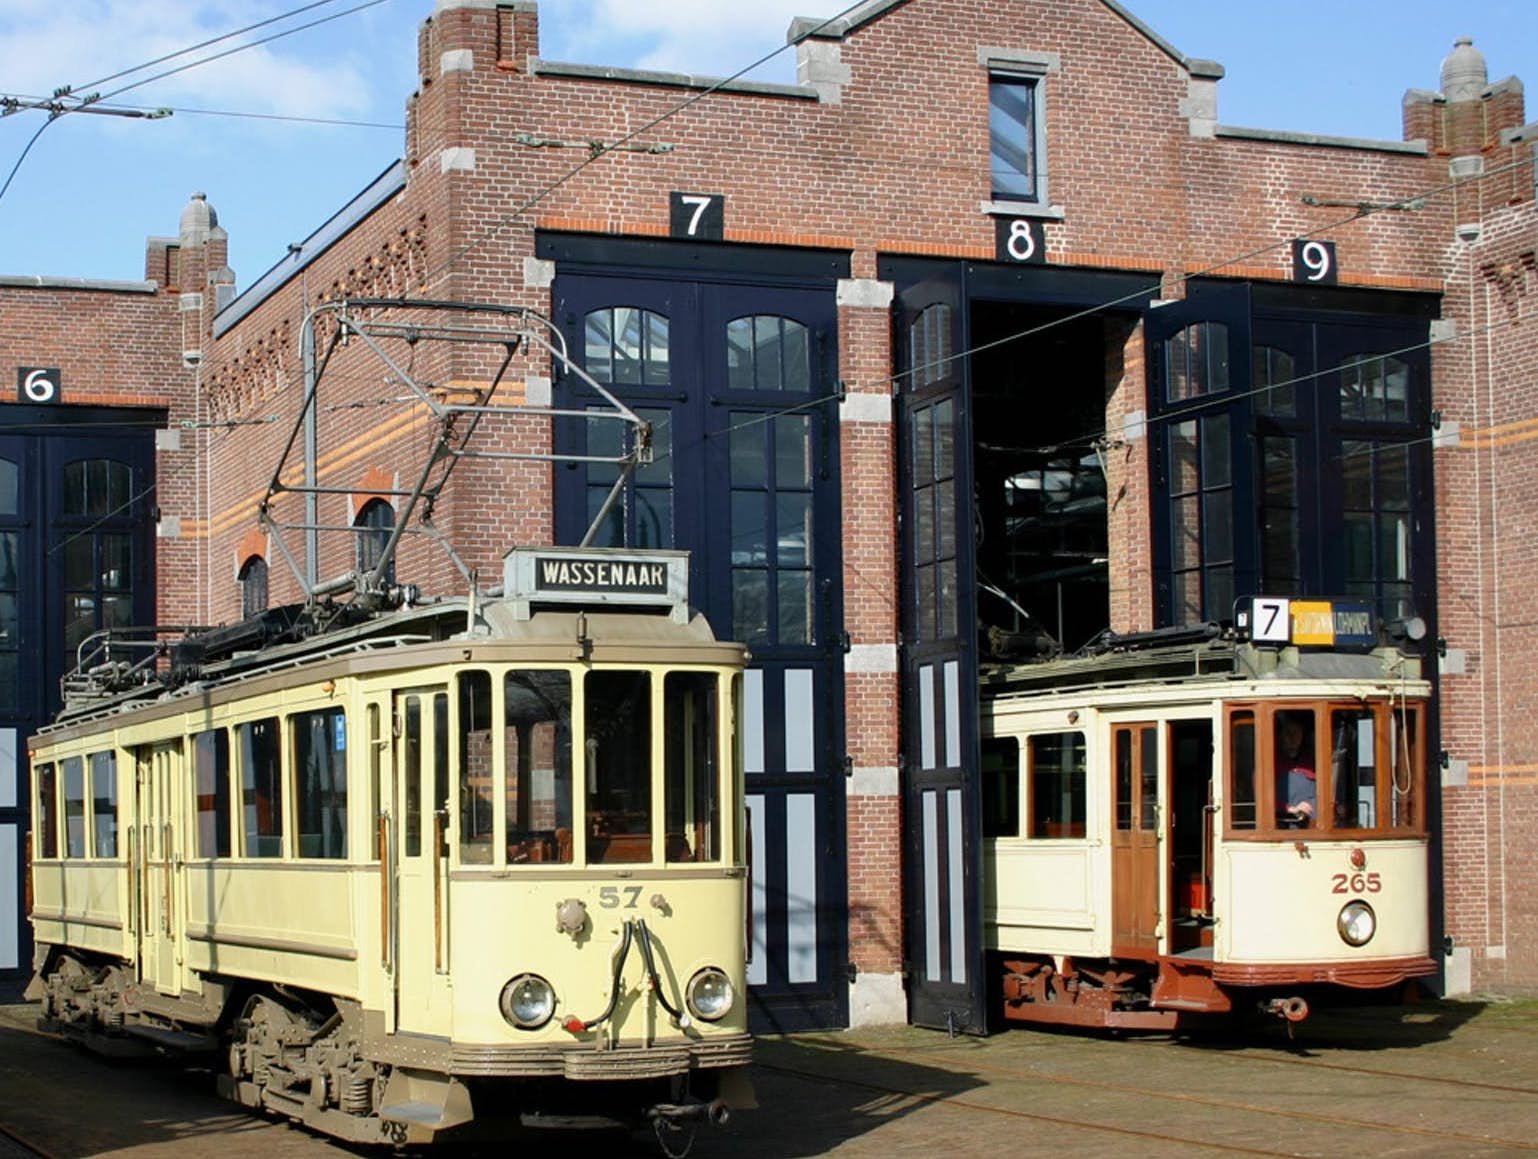 Haags Openbaar Vervoer Museum - Den Haag